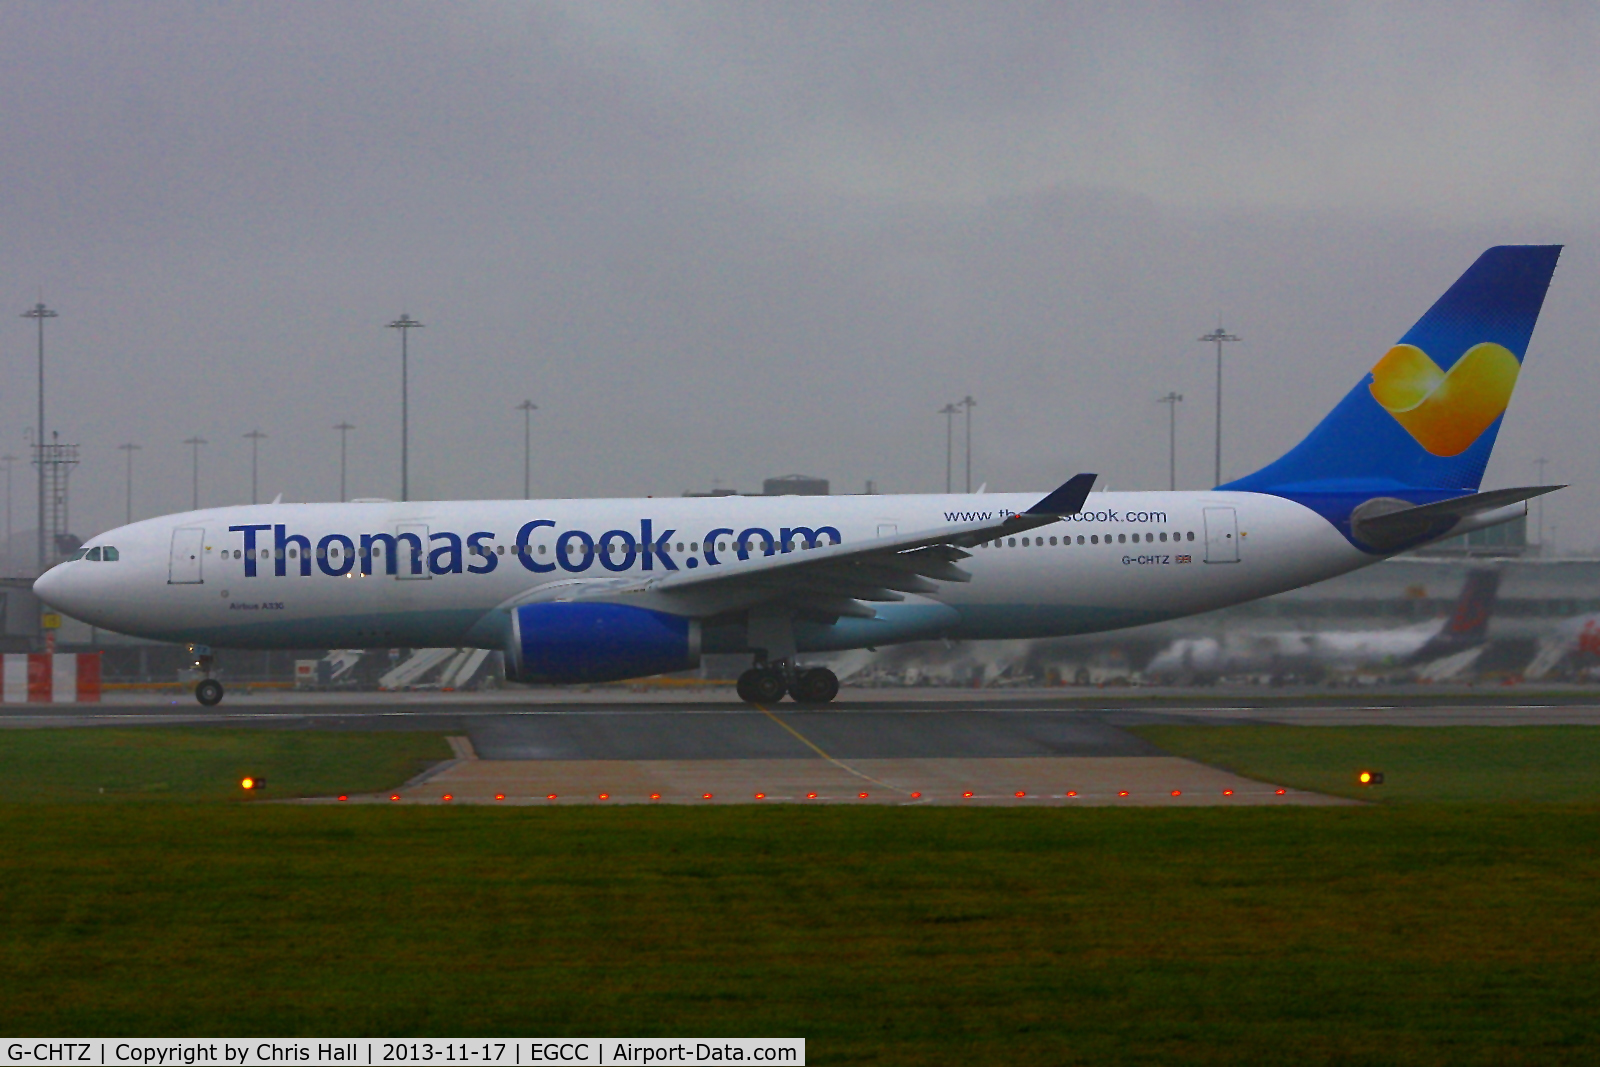 G-CHTZ, 2001 Airbus A330-243 C/N 398, Thomas Cook